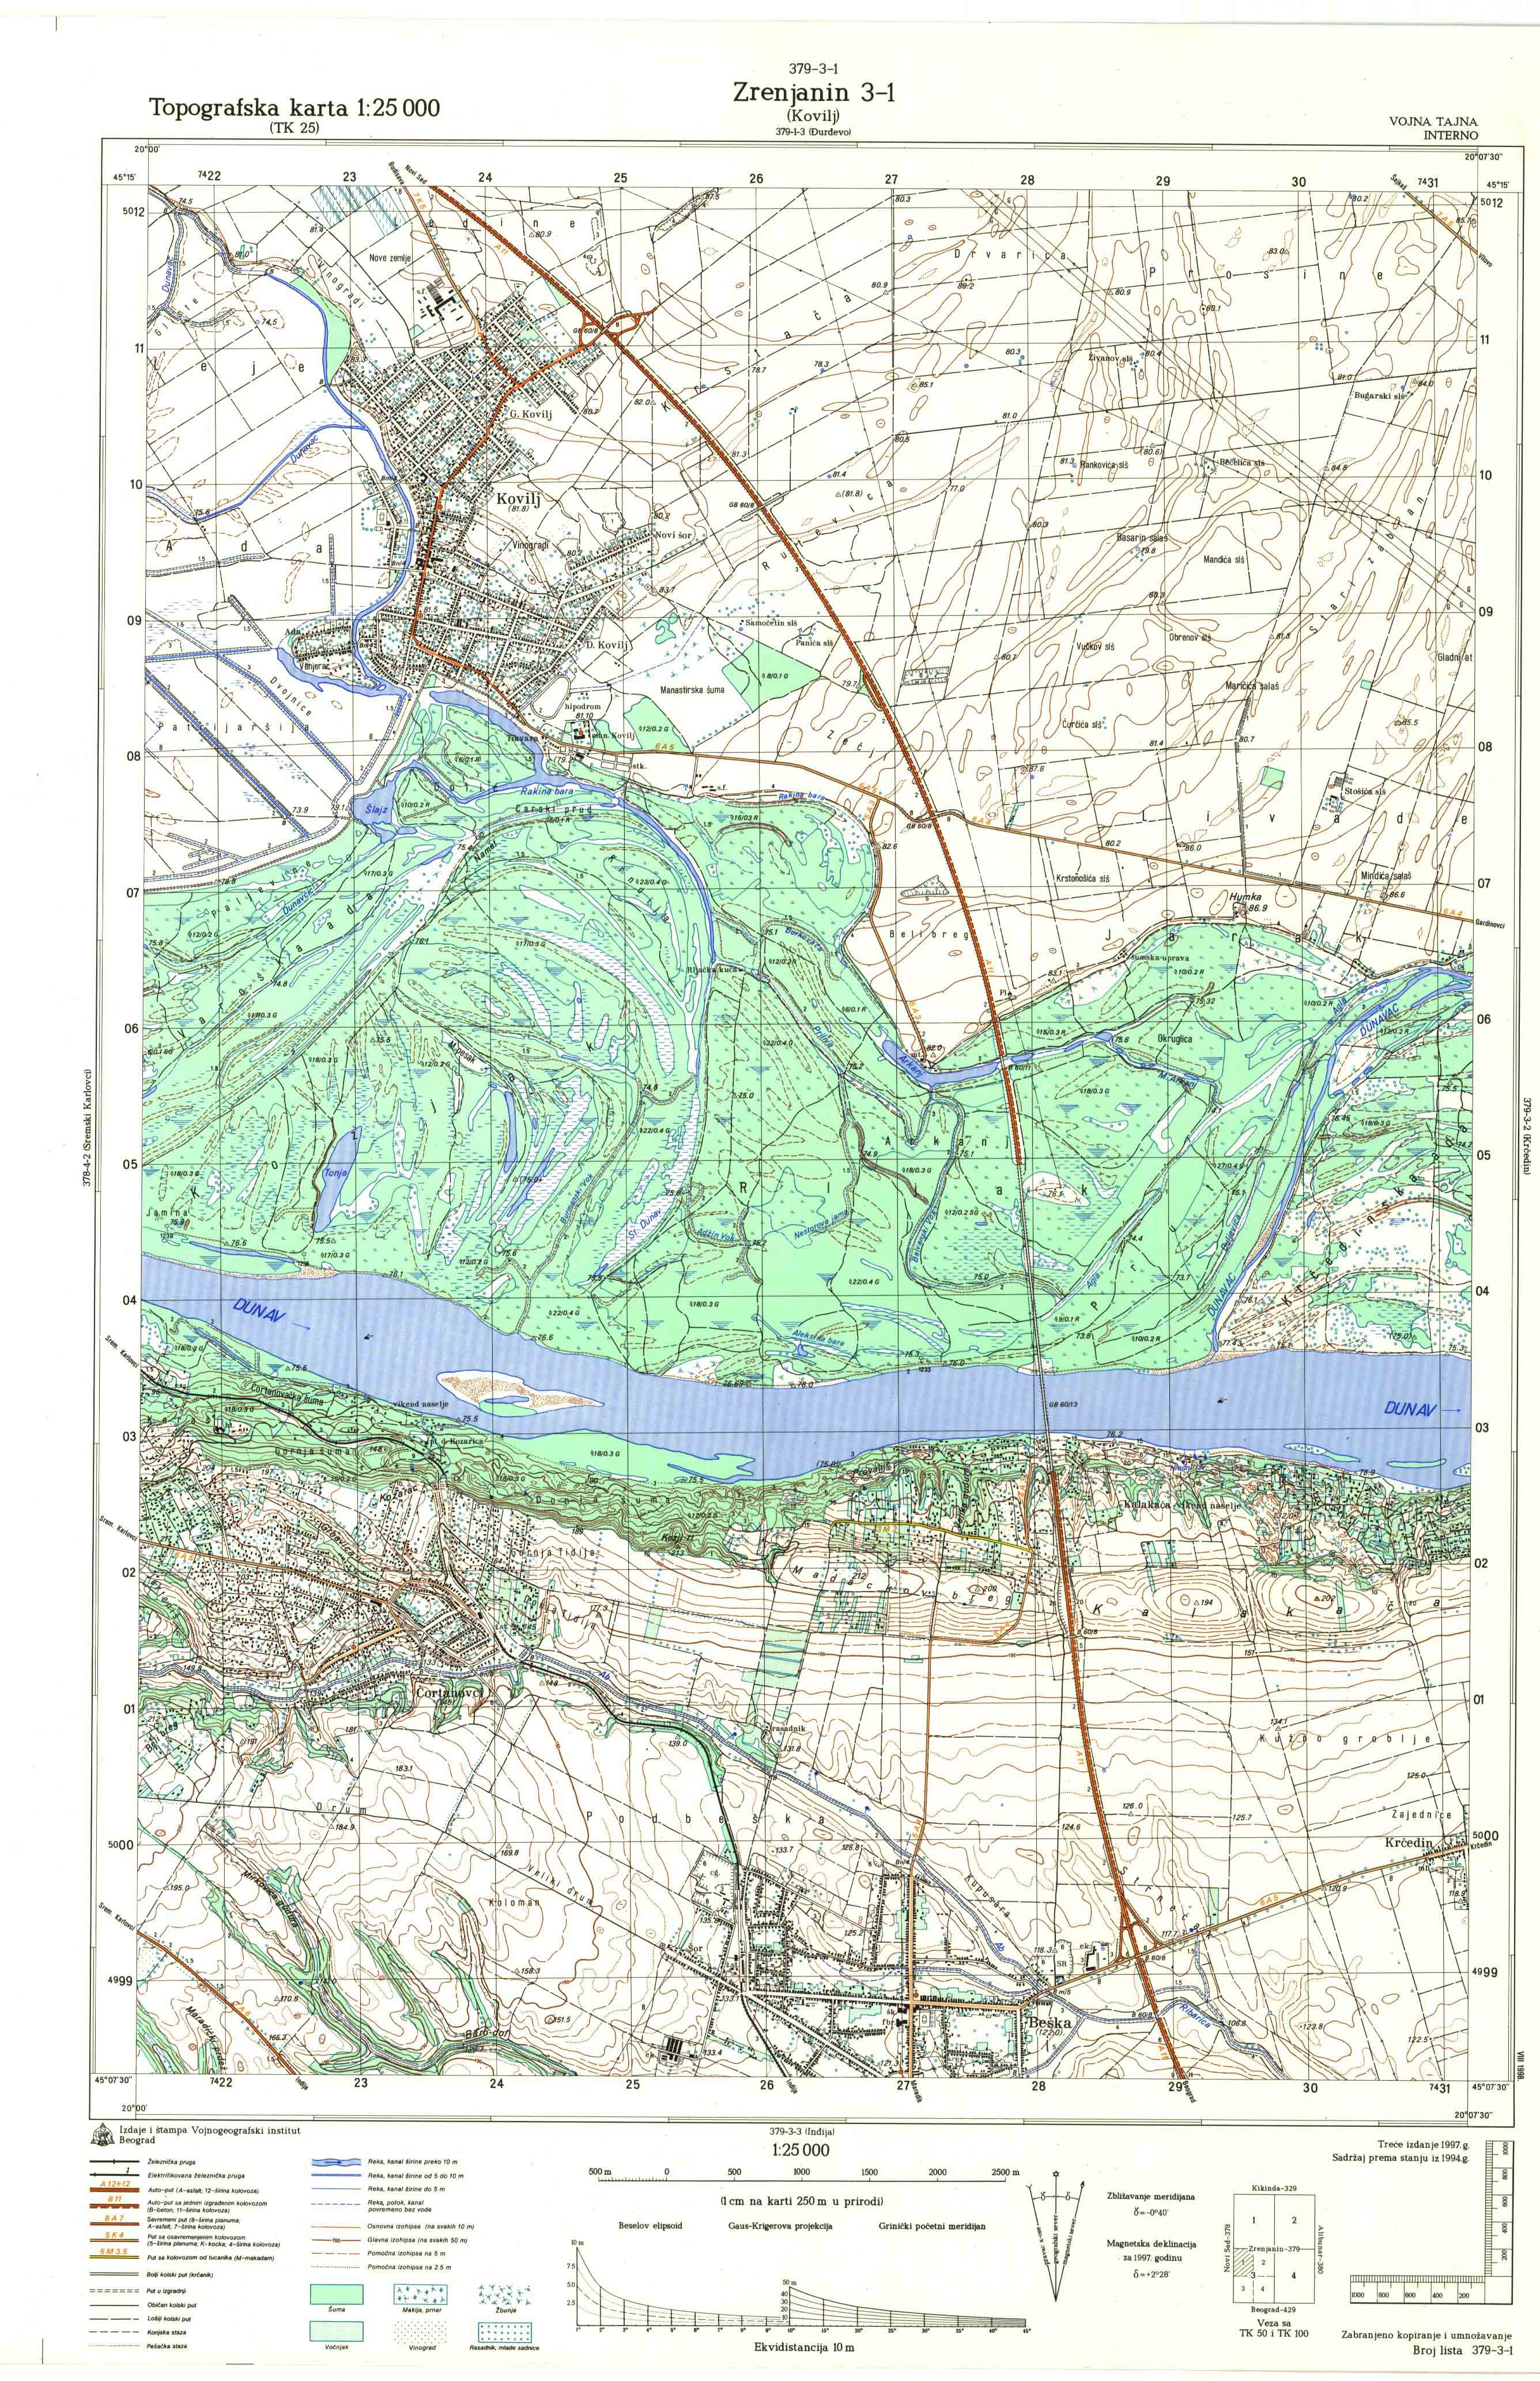  topografska karta srbije 25000 JNA  Novi Sad